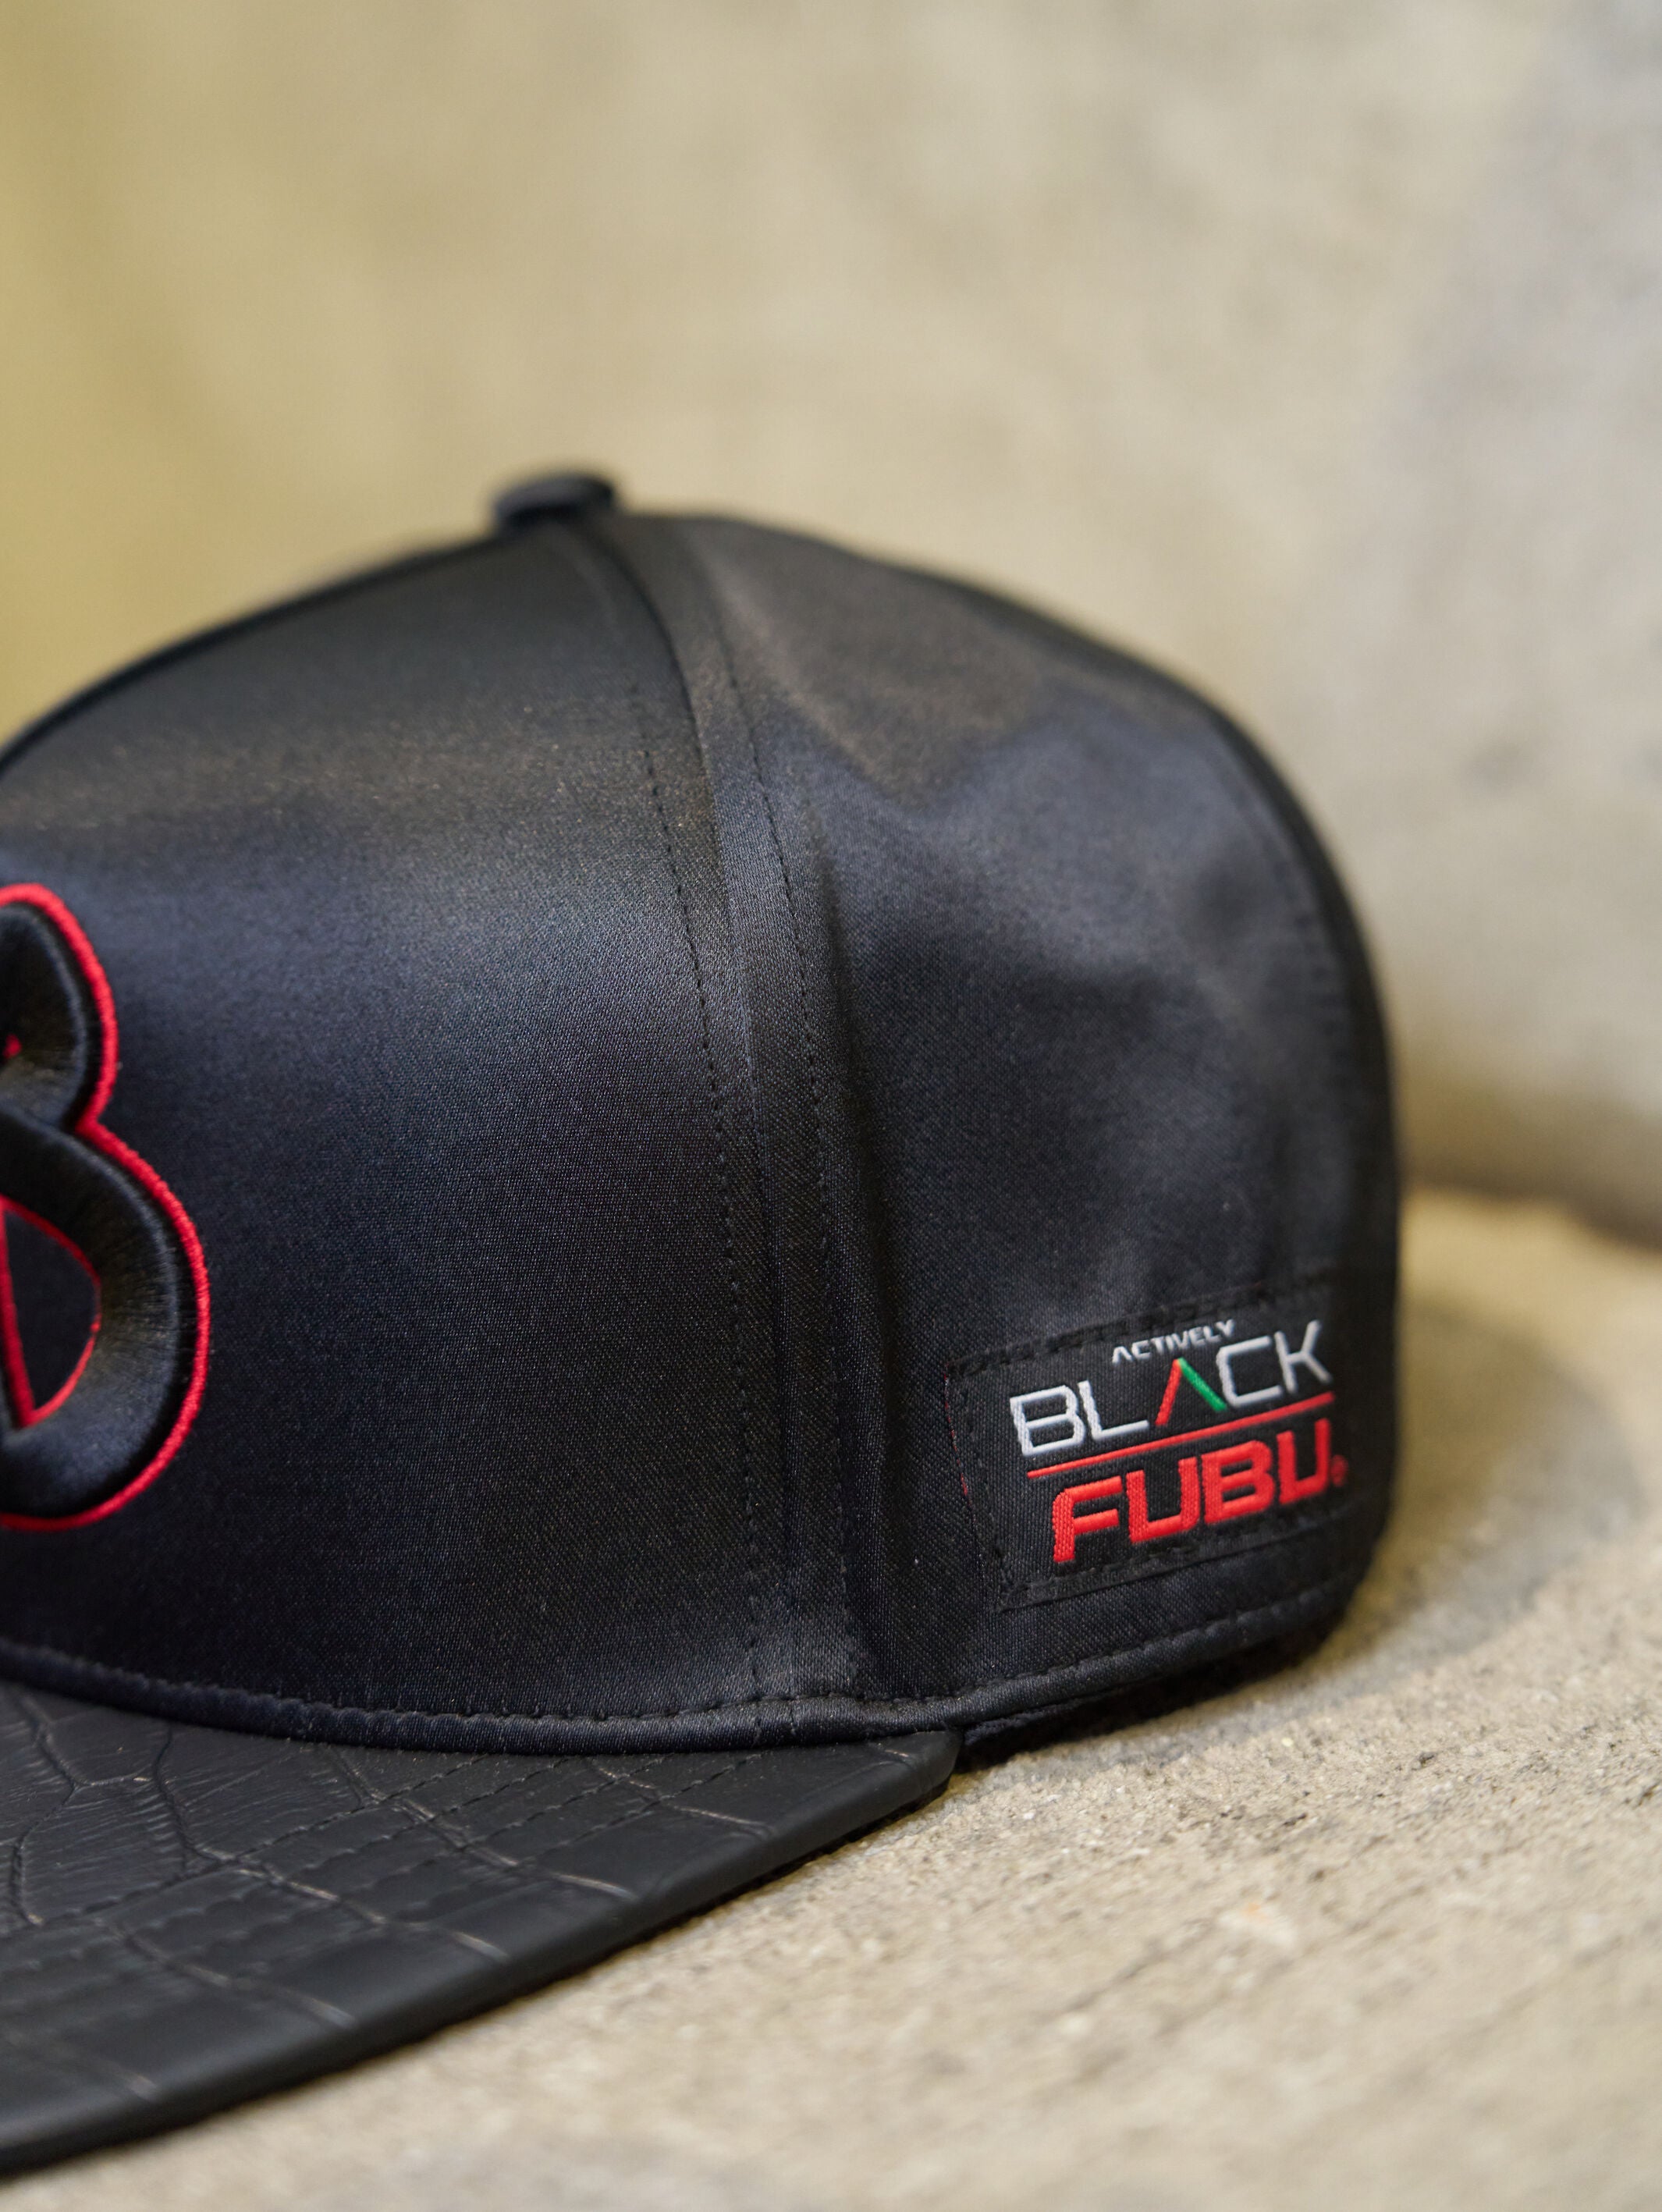 FUBU x Actively Black Premium Snapback